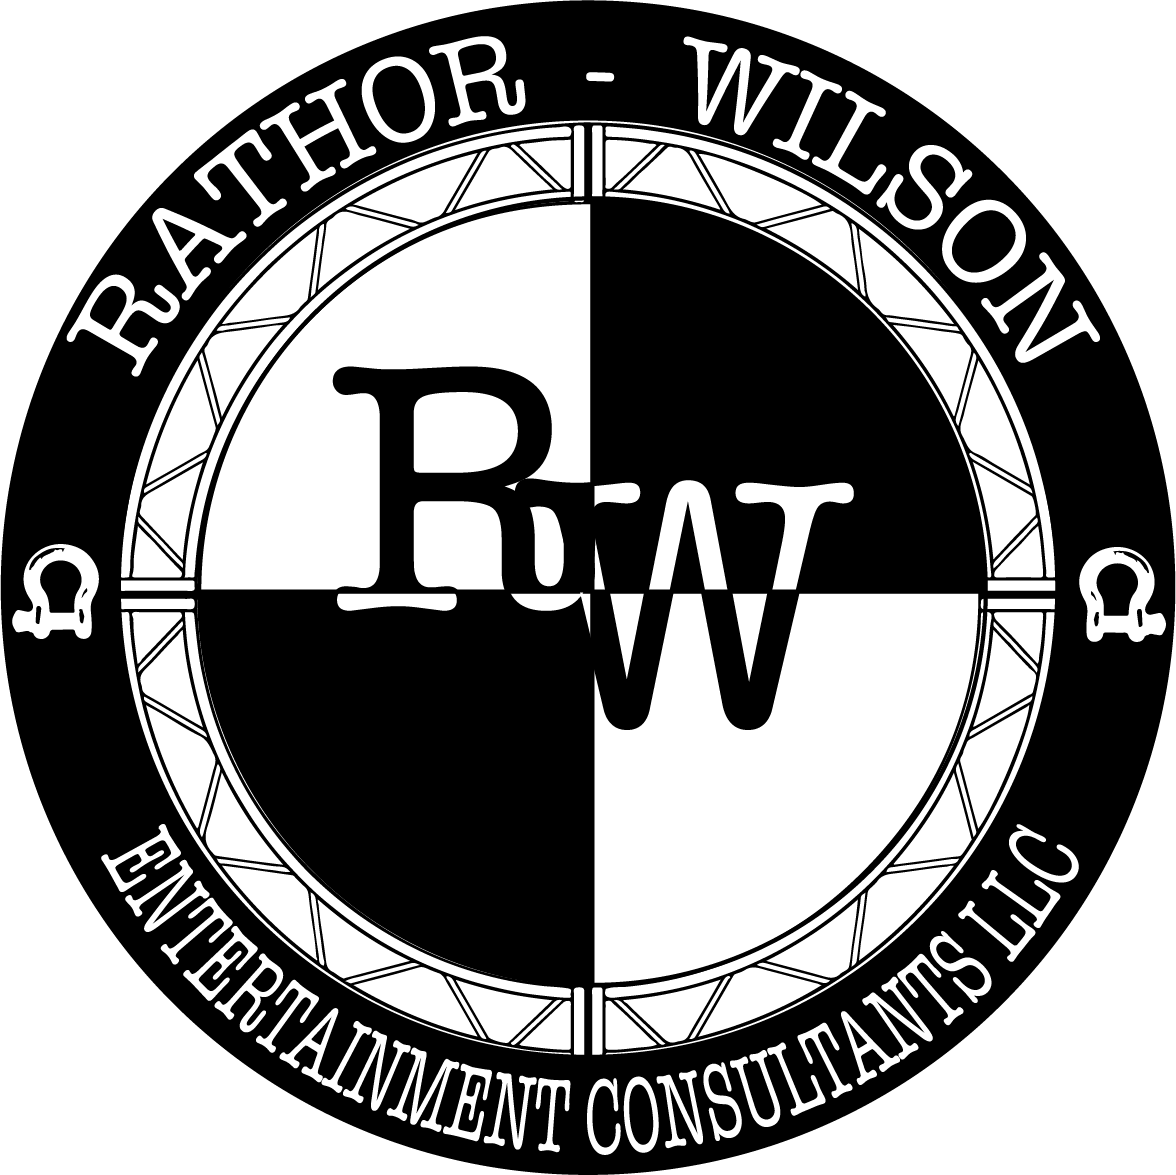 RW Entertainment Consultants